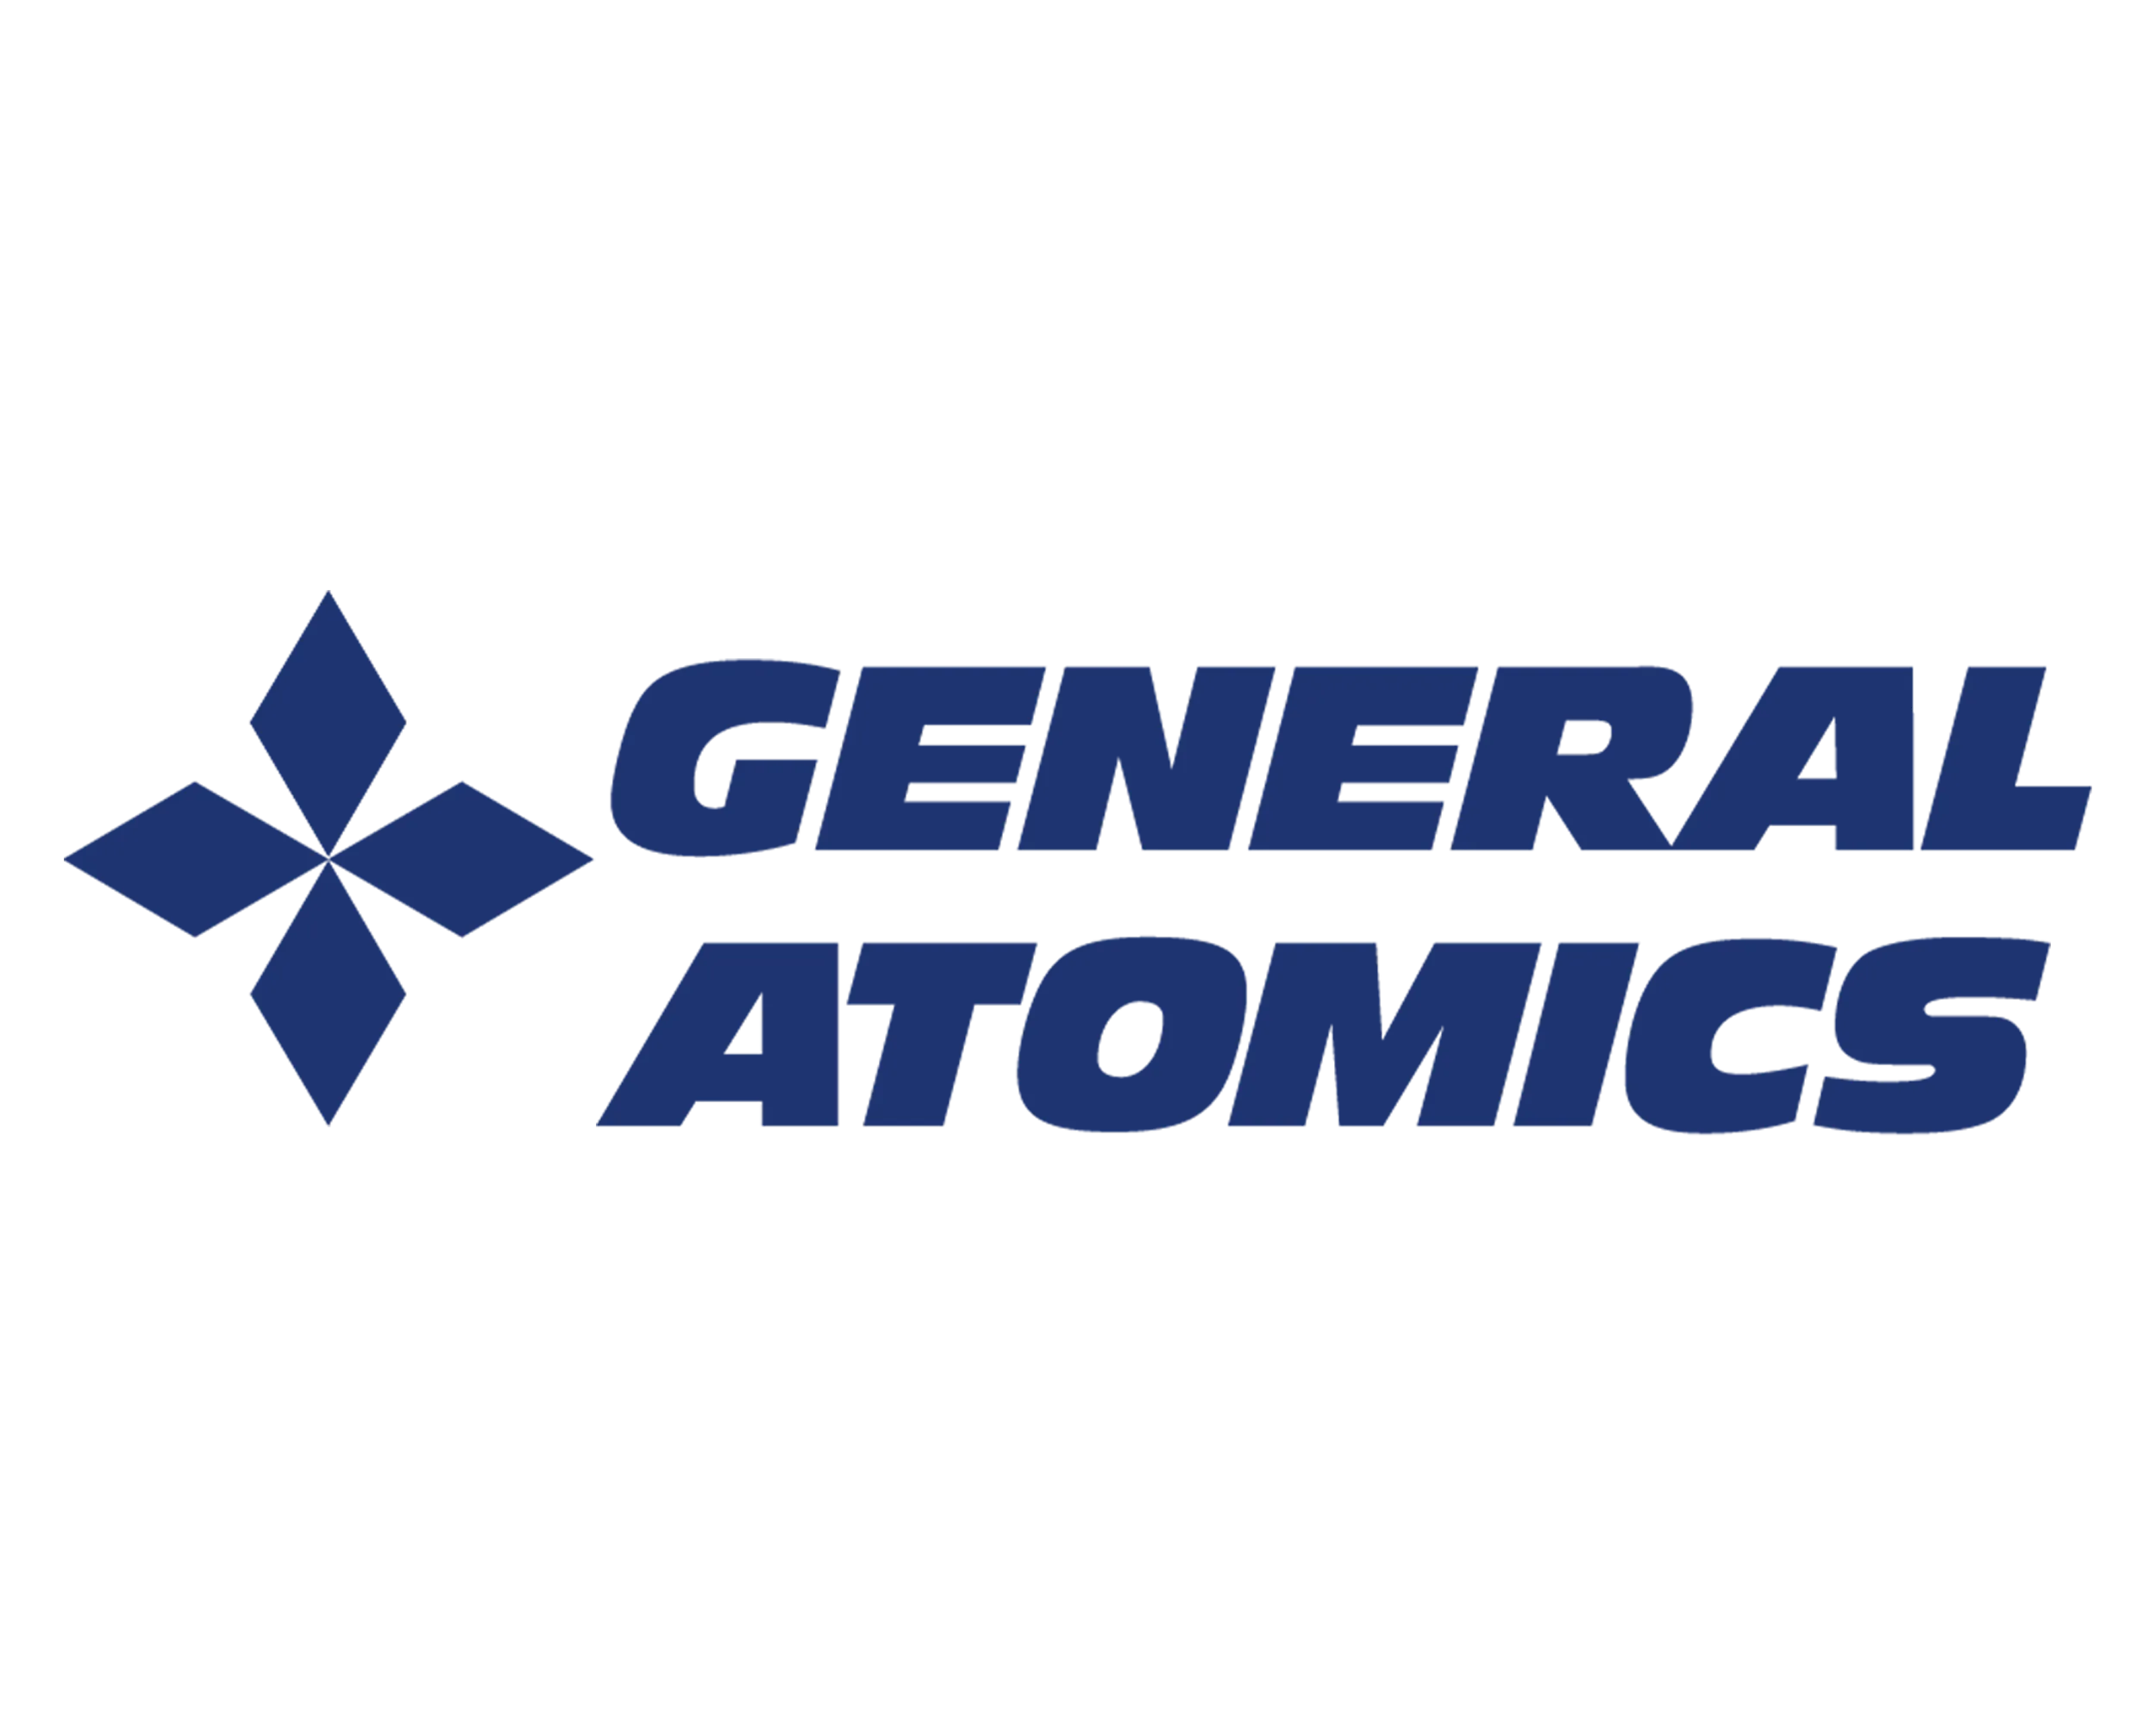 General Atomics